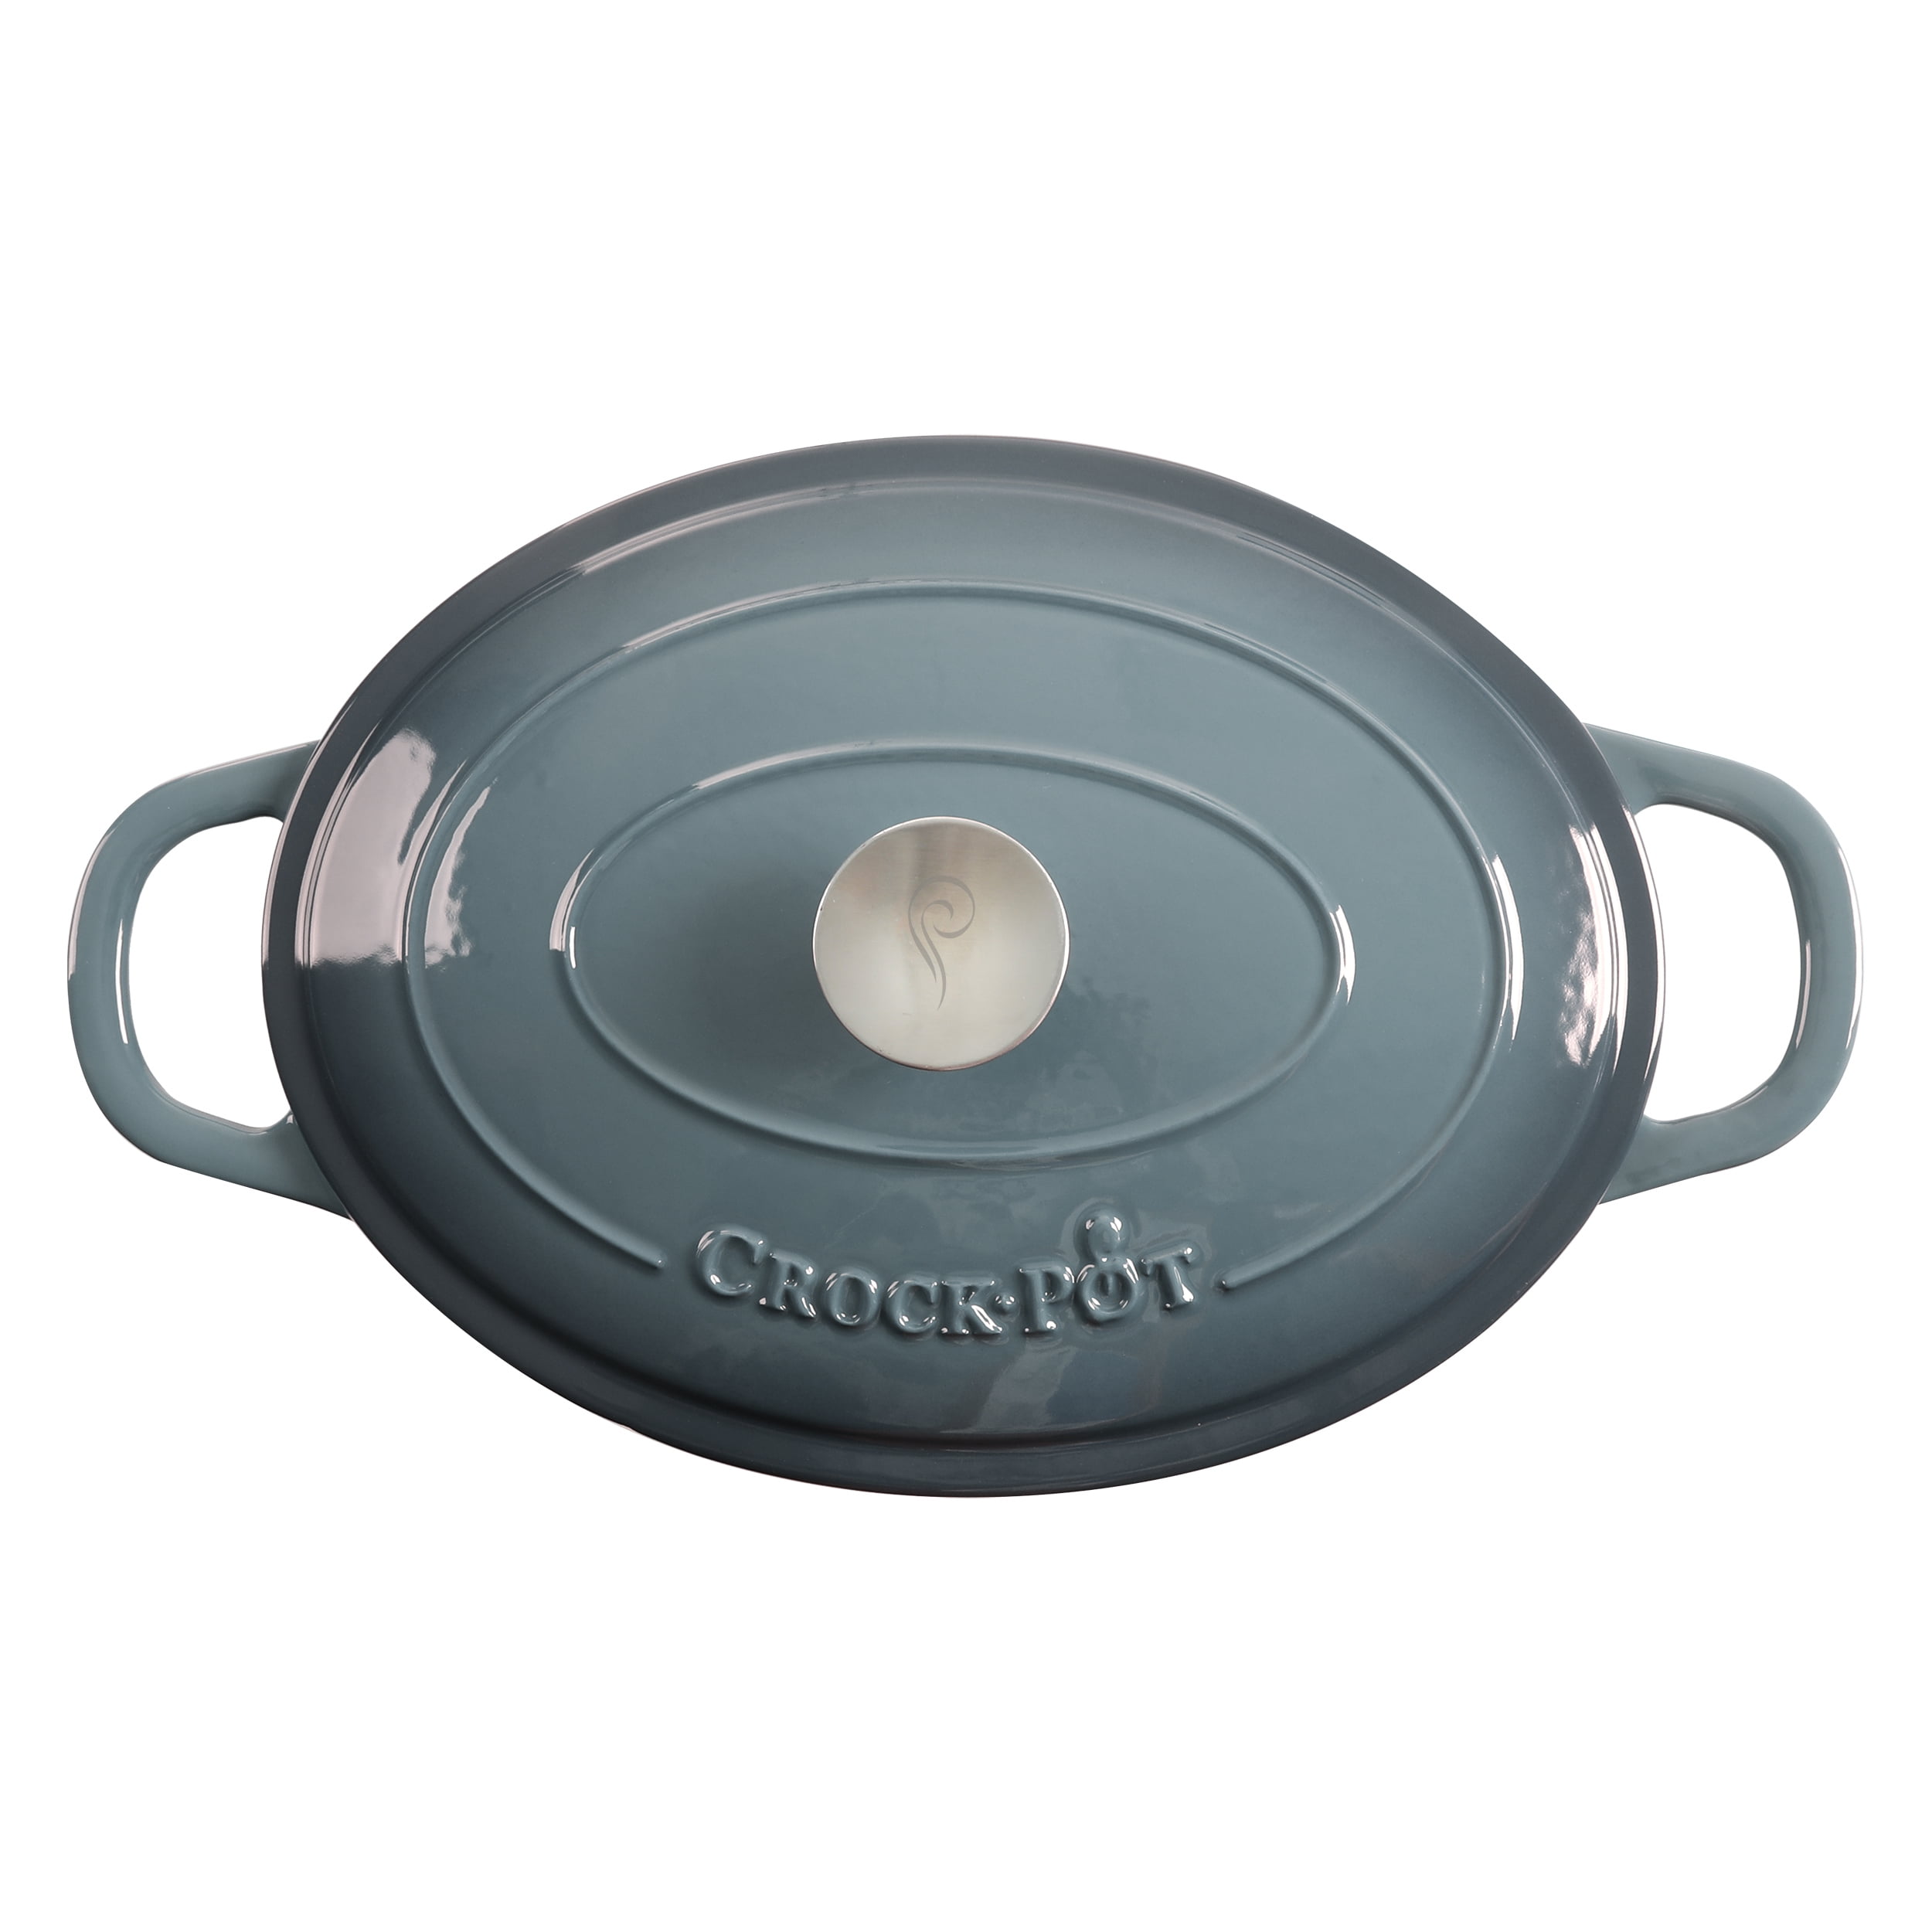 Crock Pot Artisan 5-Quart Dutch Oven - Gray, 5 qt - Fry's Food Stores